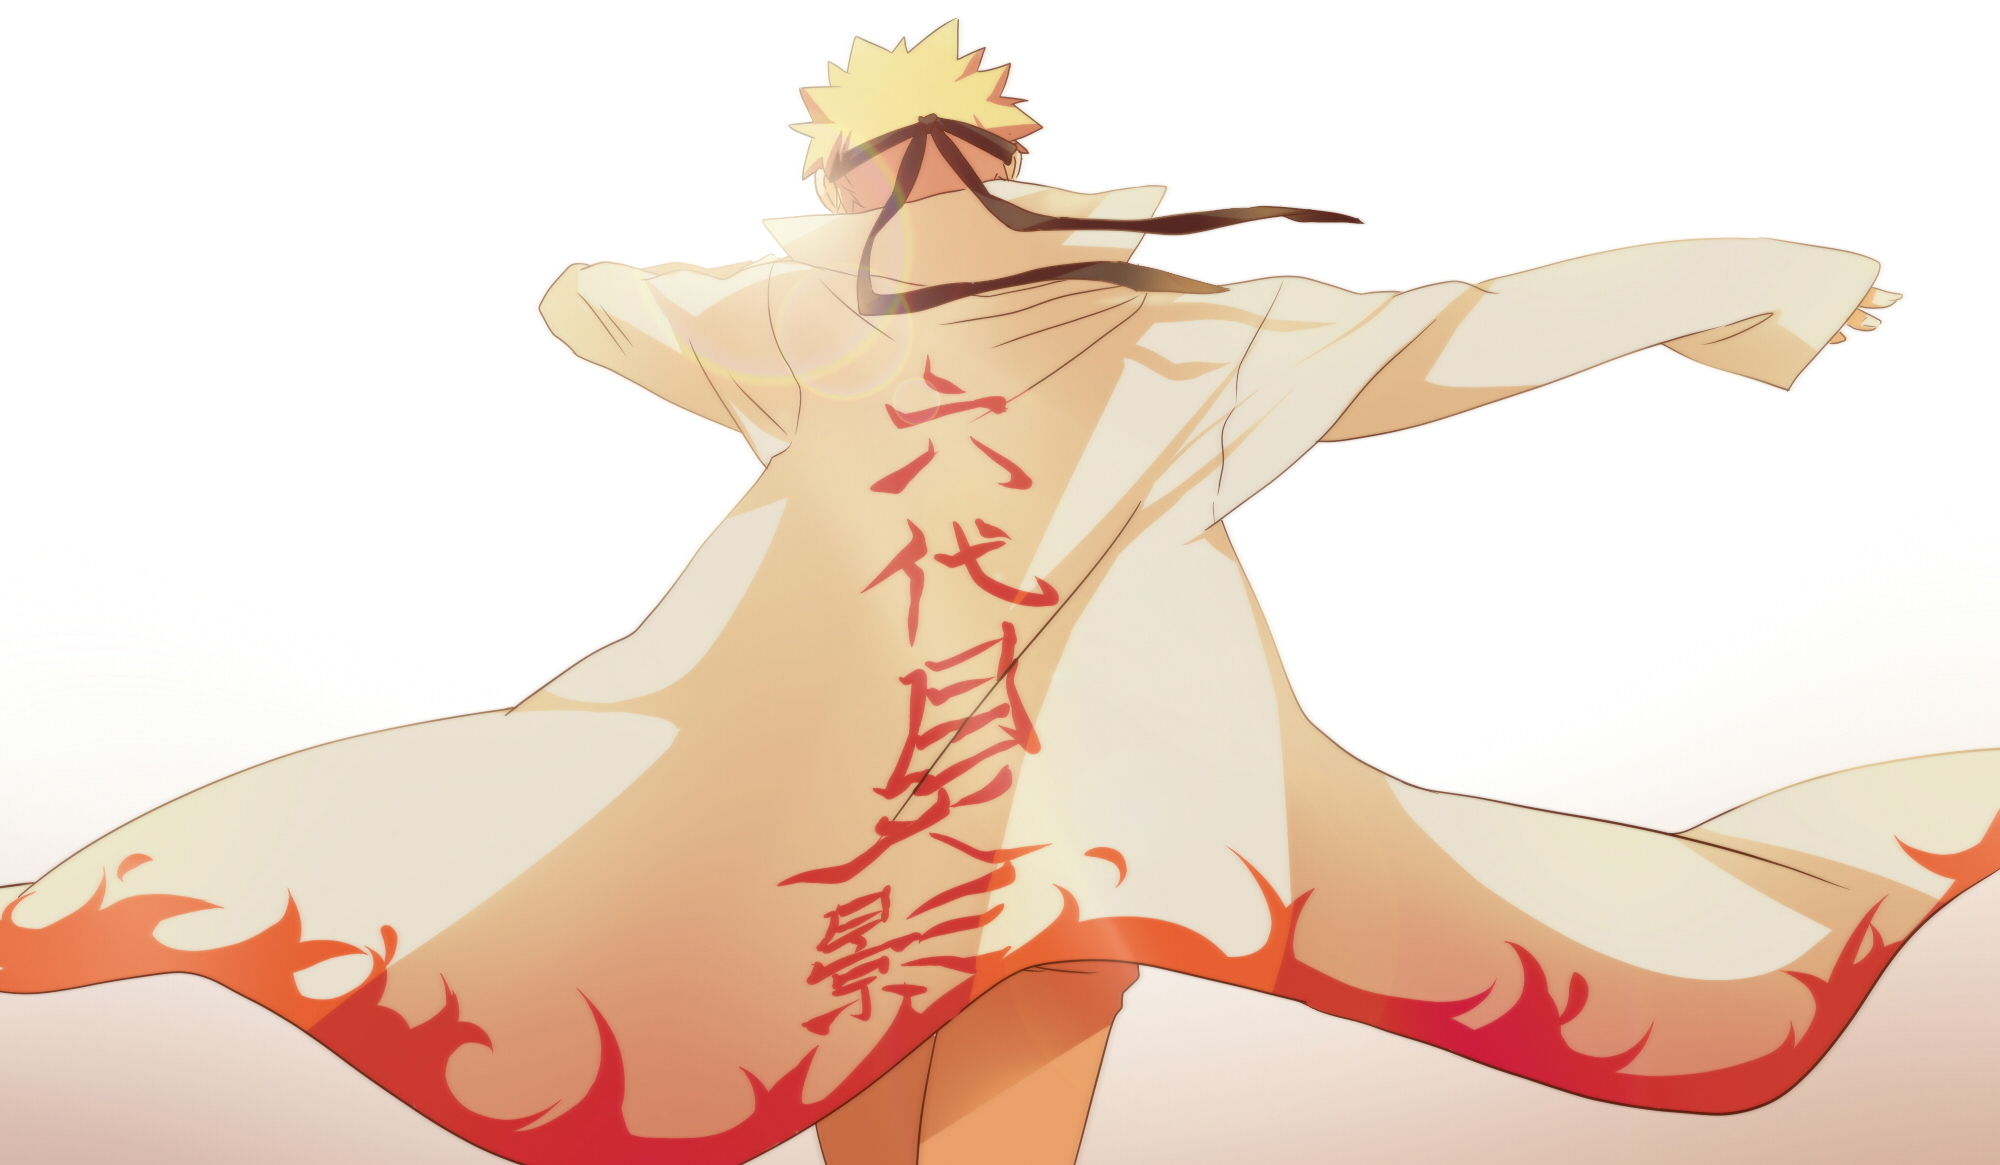 Hokage (Naruto) wallpapers for desktop, download free Hokage